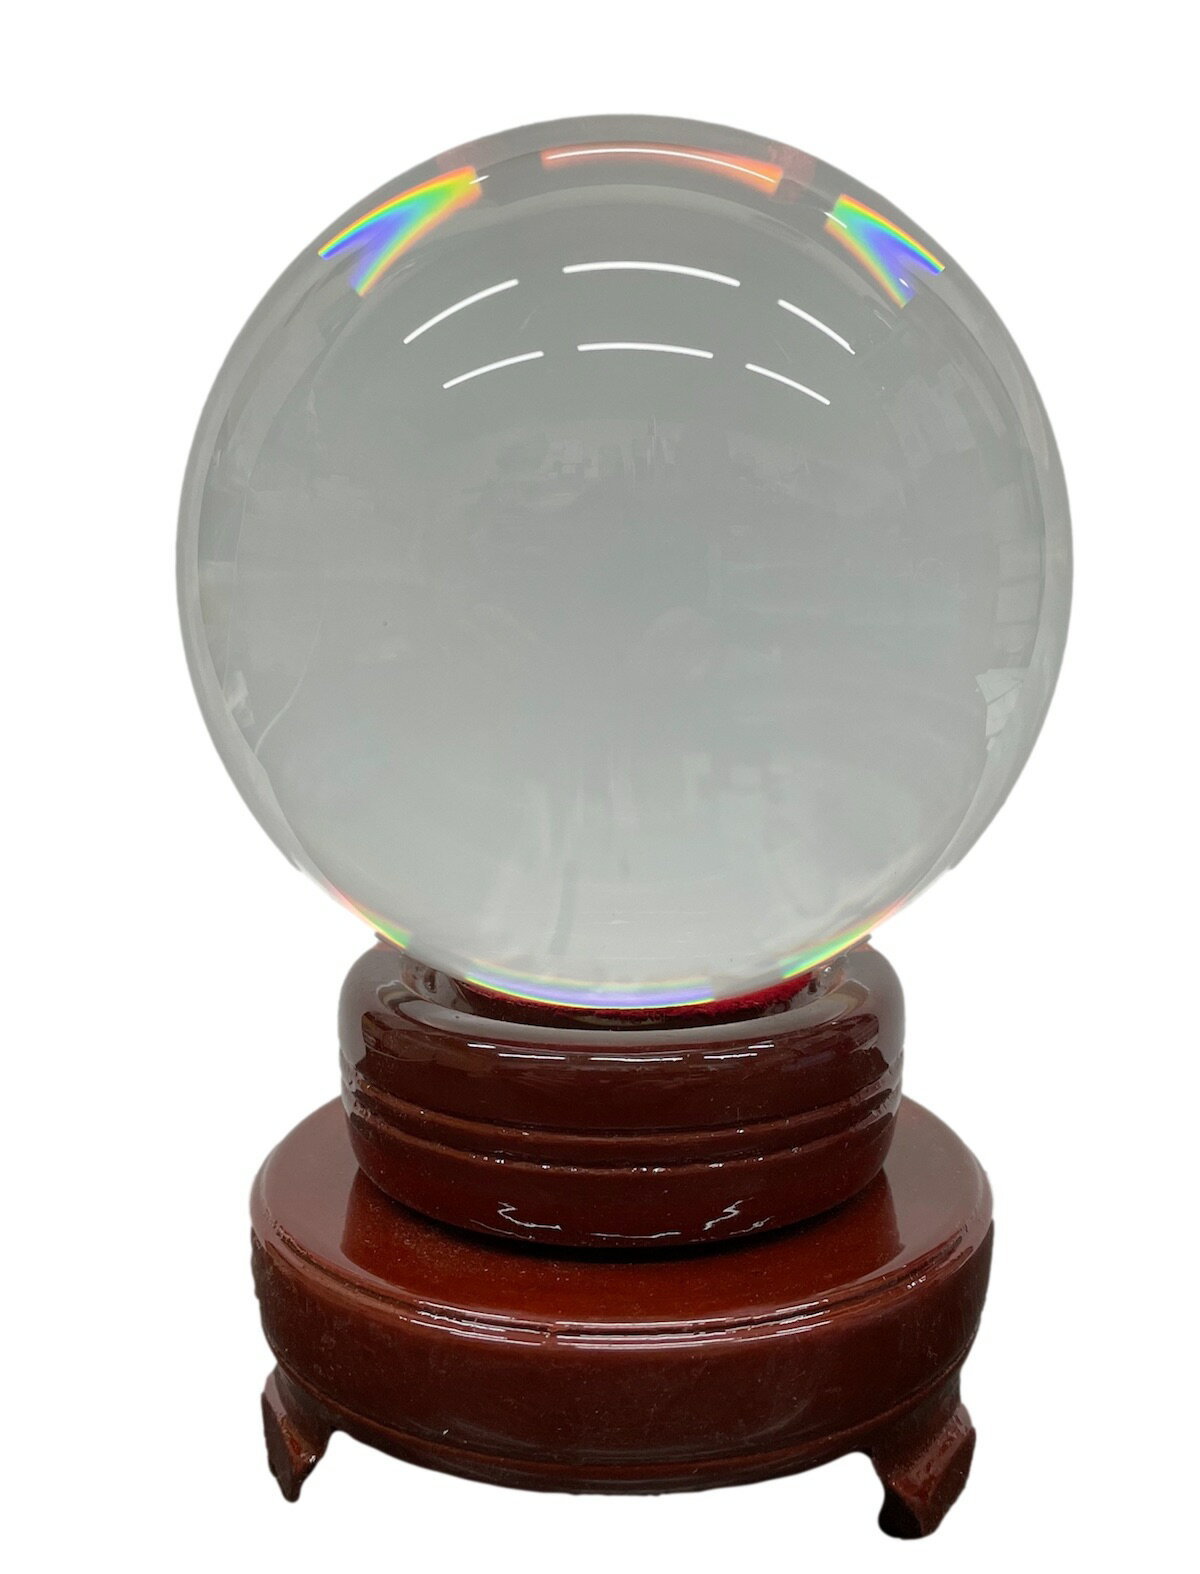 水晶玉 人工（溶錬）100mm 回転台座付き 風水 占い パワーストーン 10cm クリスタルボール